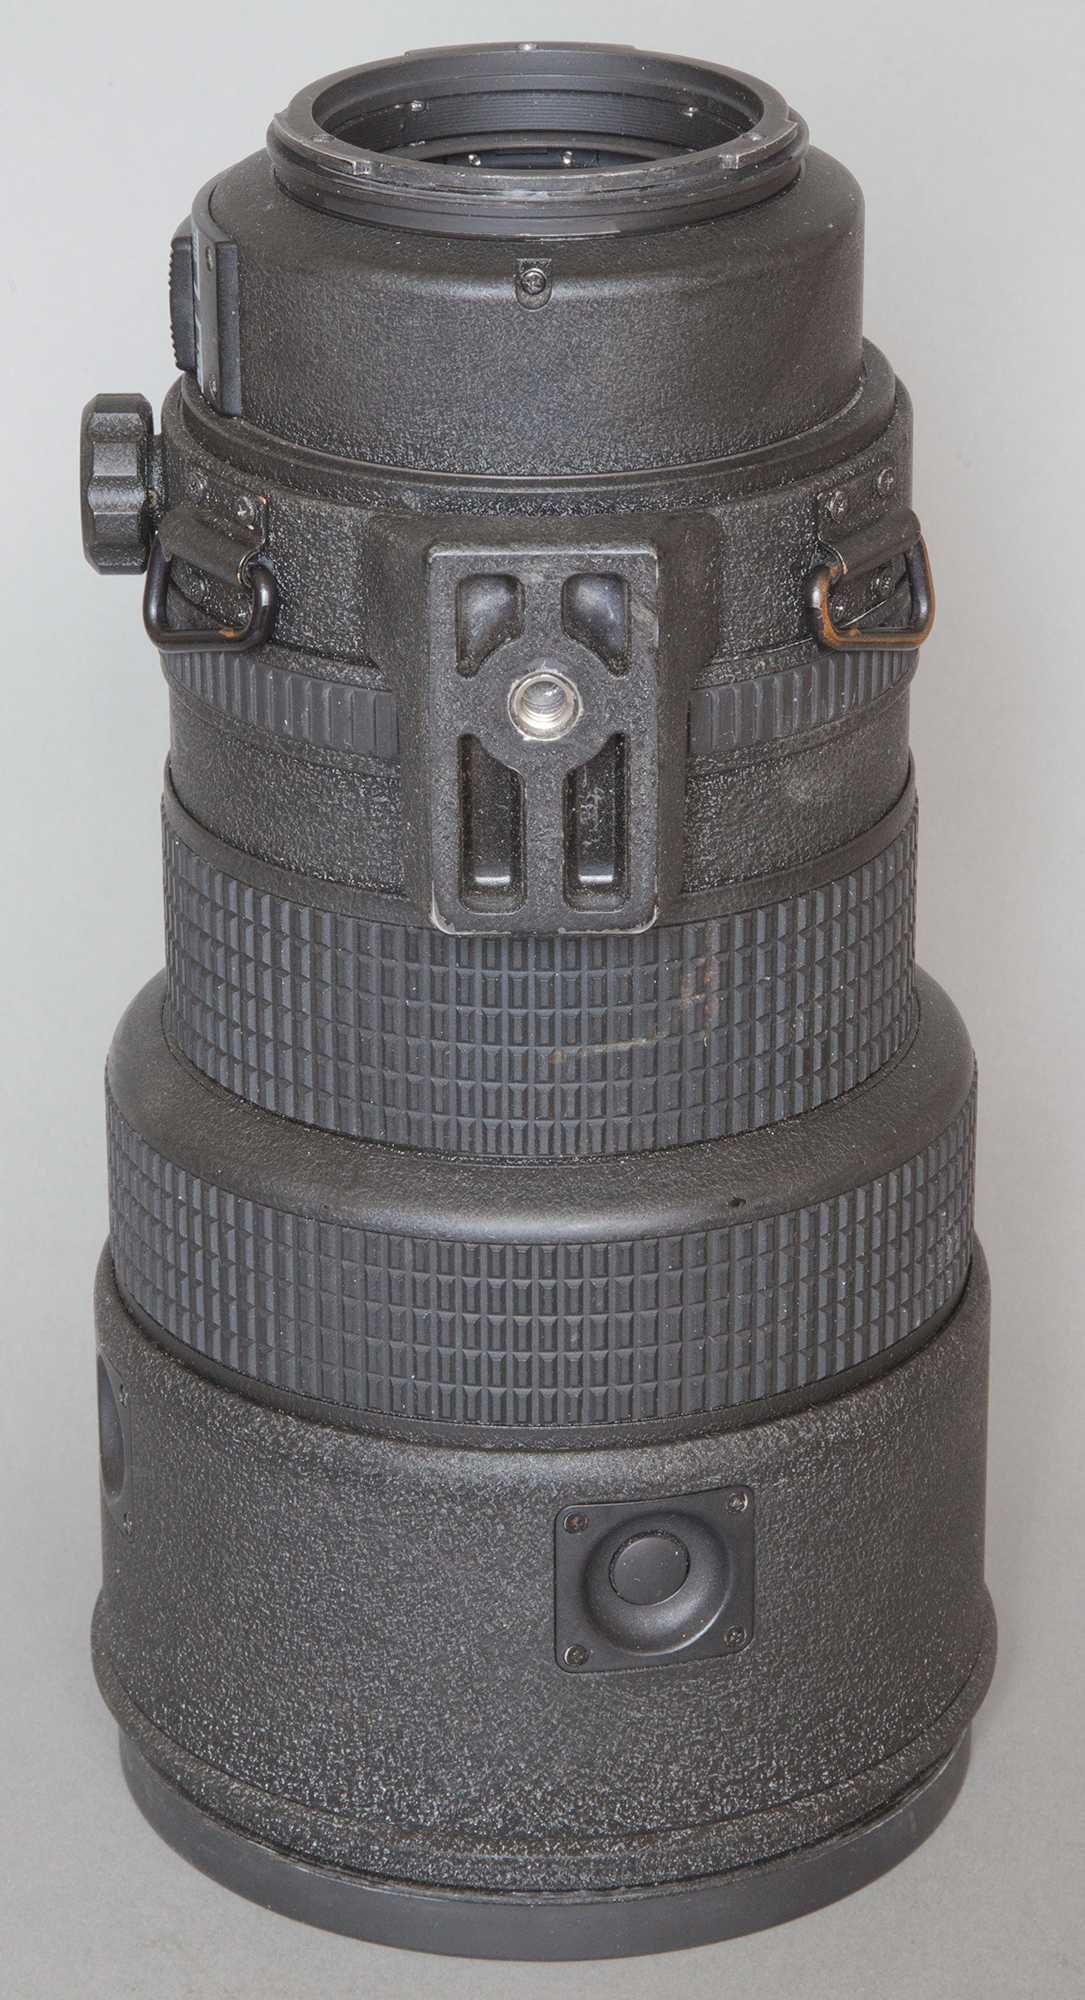 Nikkor AF-I 300mm/2,8 do Mamiya 645 AF Phase One GFX Canon Sony sample